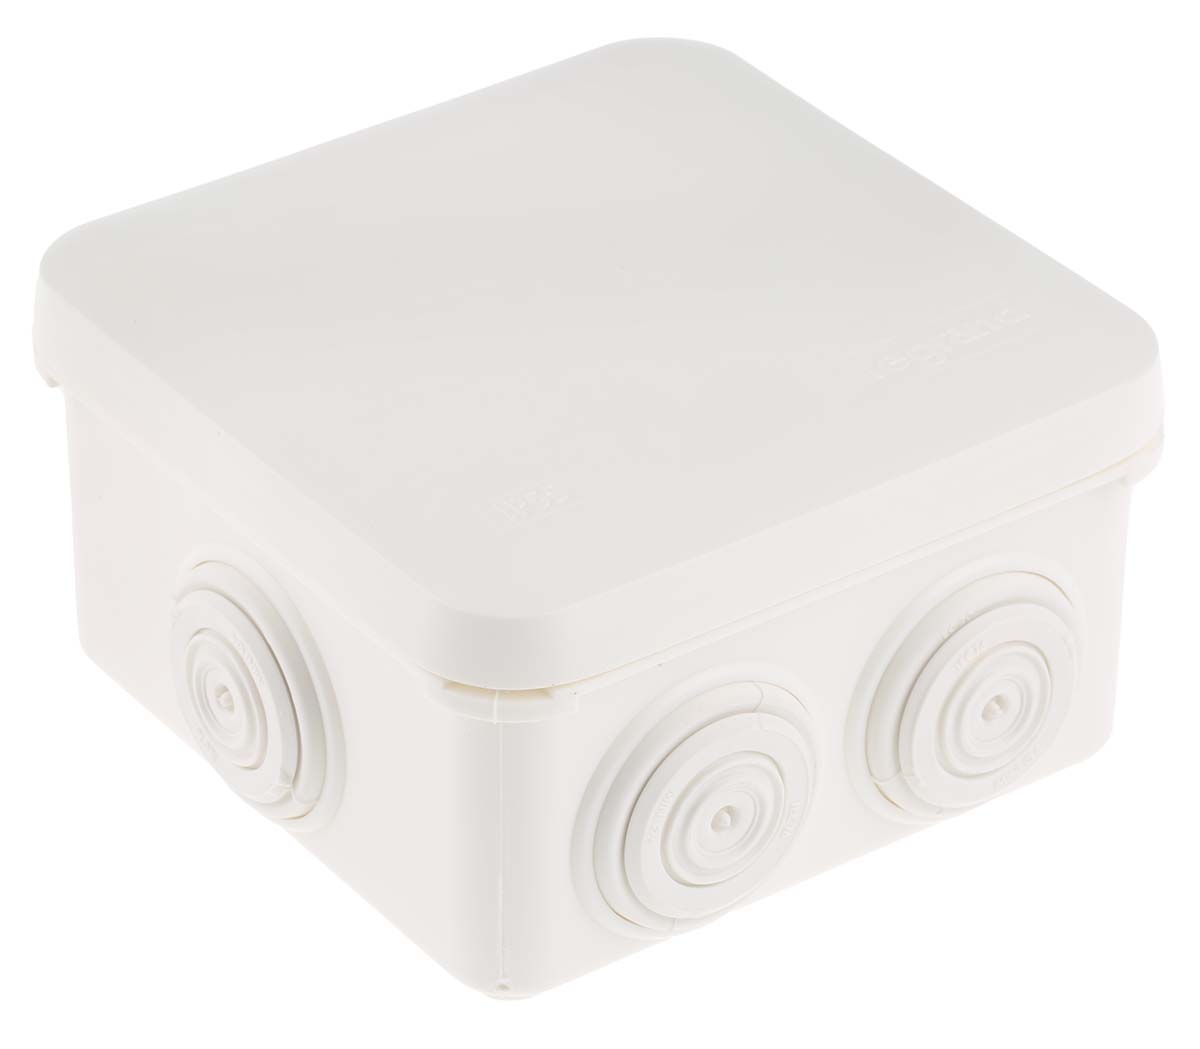 Legrand Plexo Series White Plastic Junction Box, IP55, 80 x 80 x 45mm